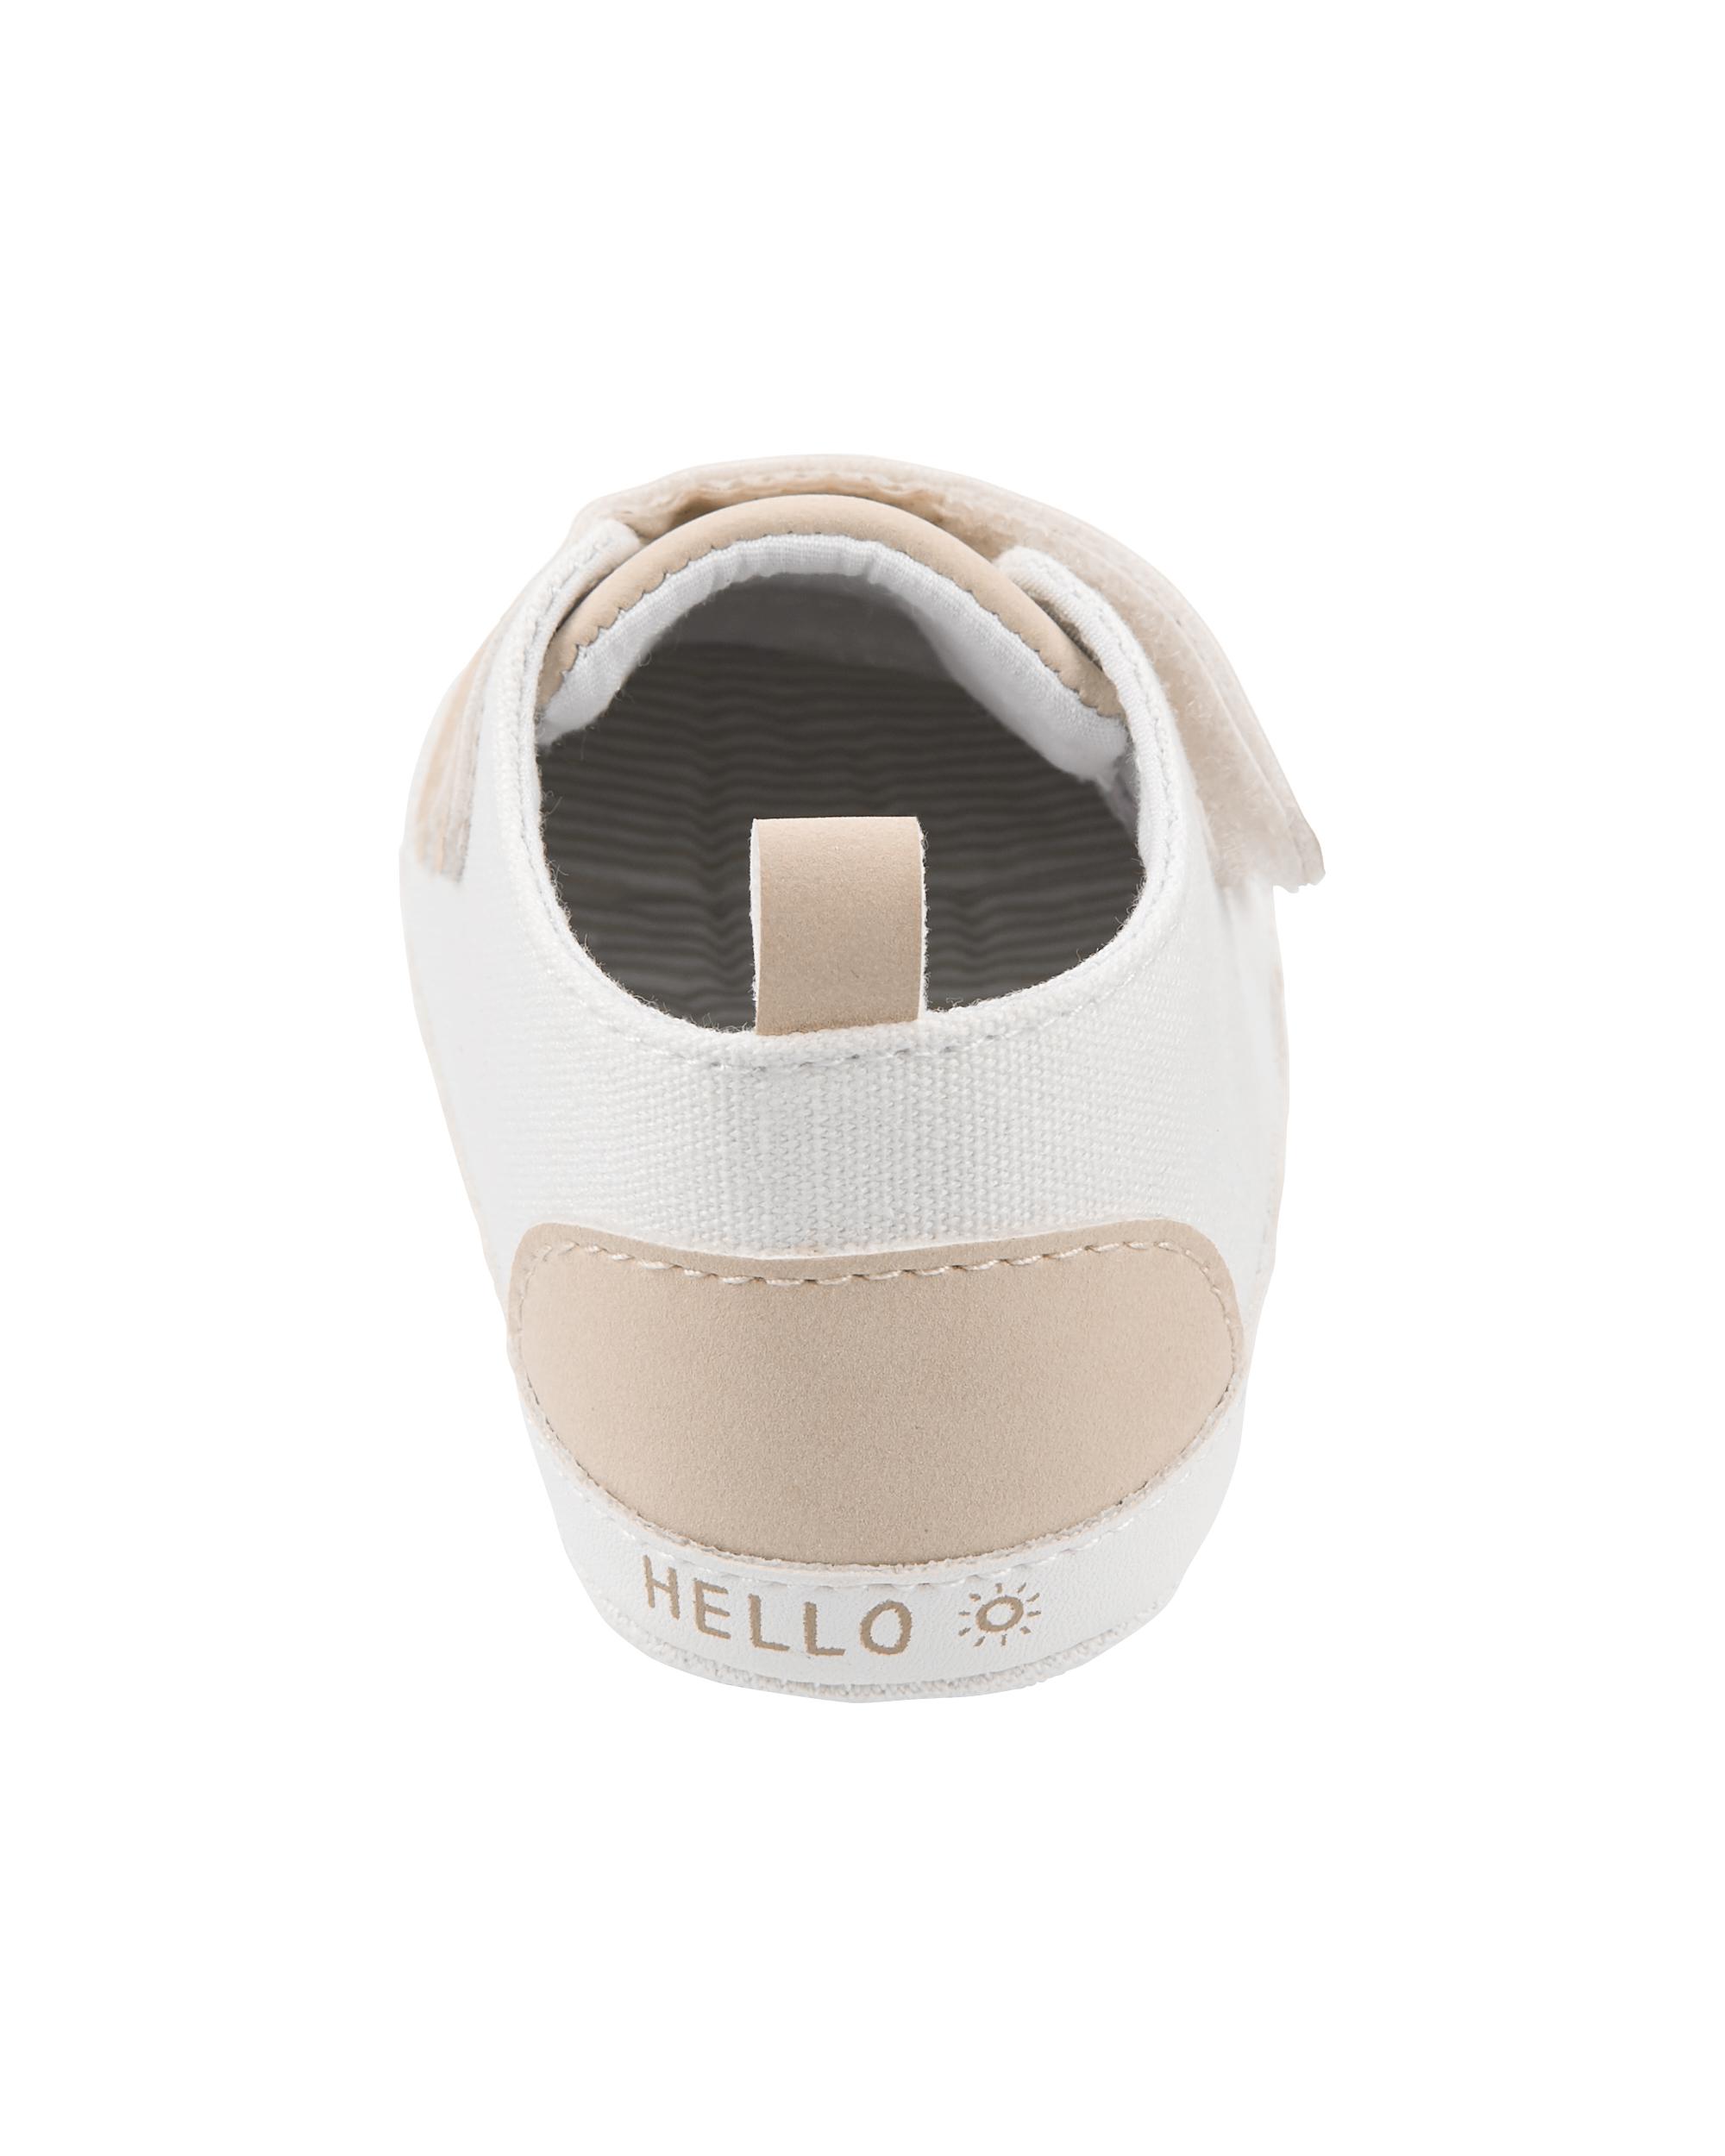 Baby Slip-On Sneakers